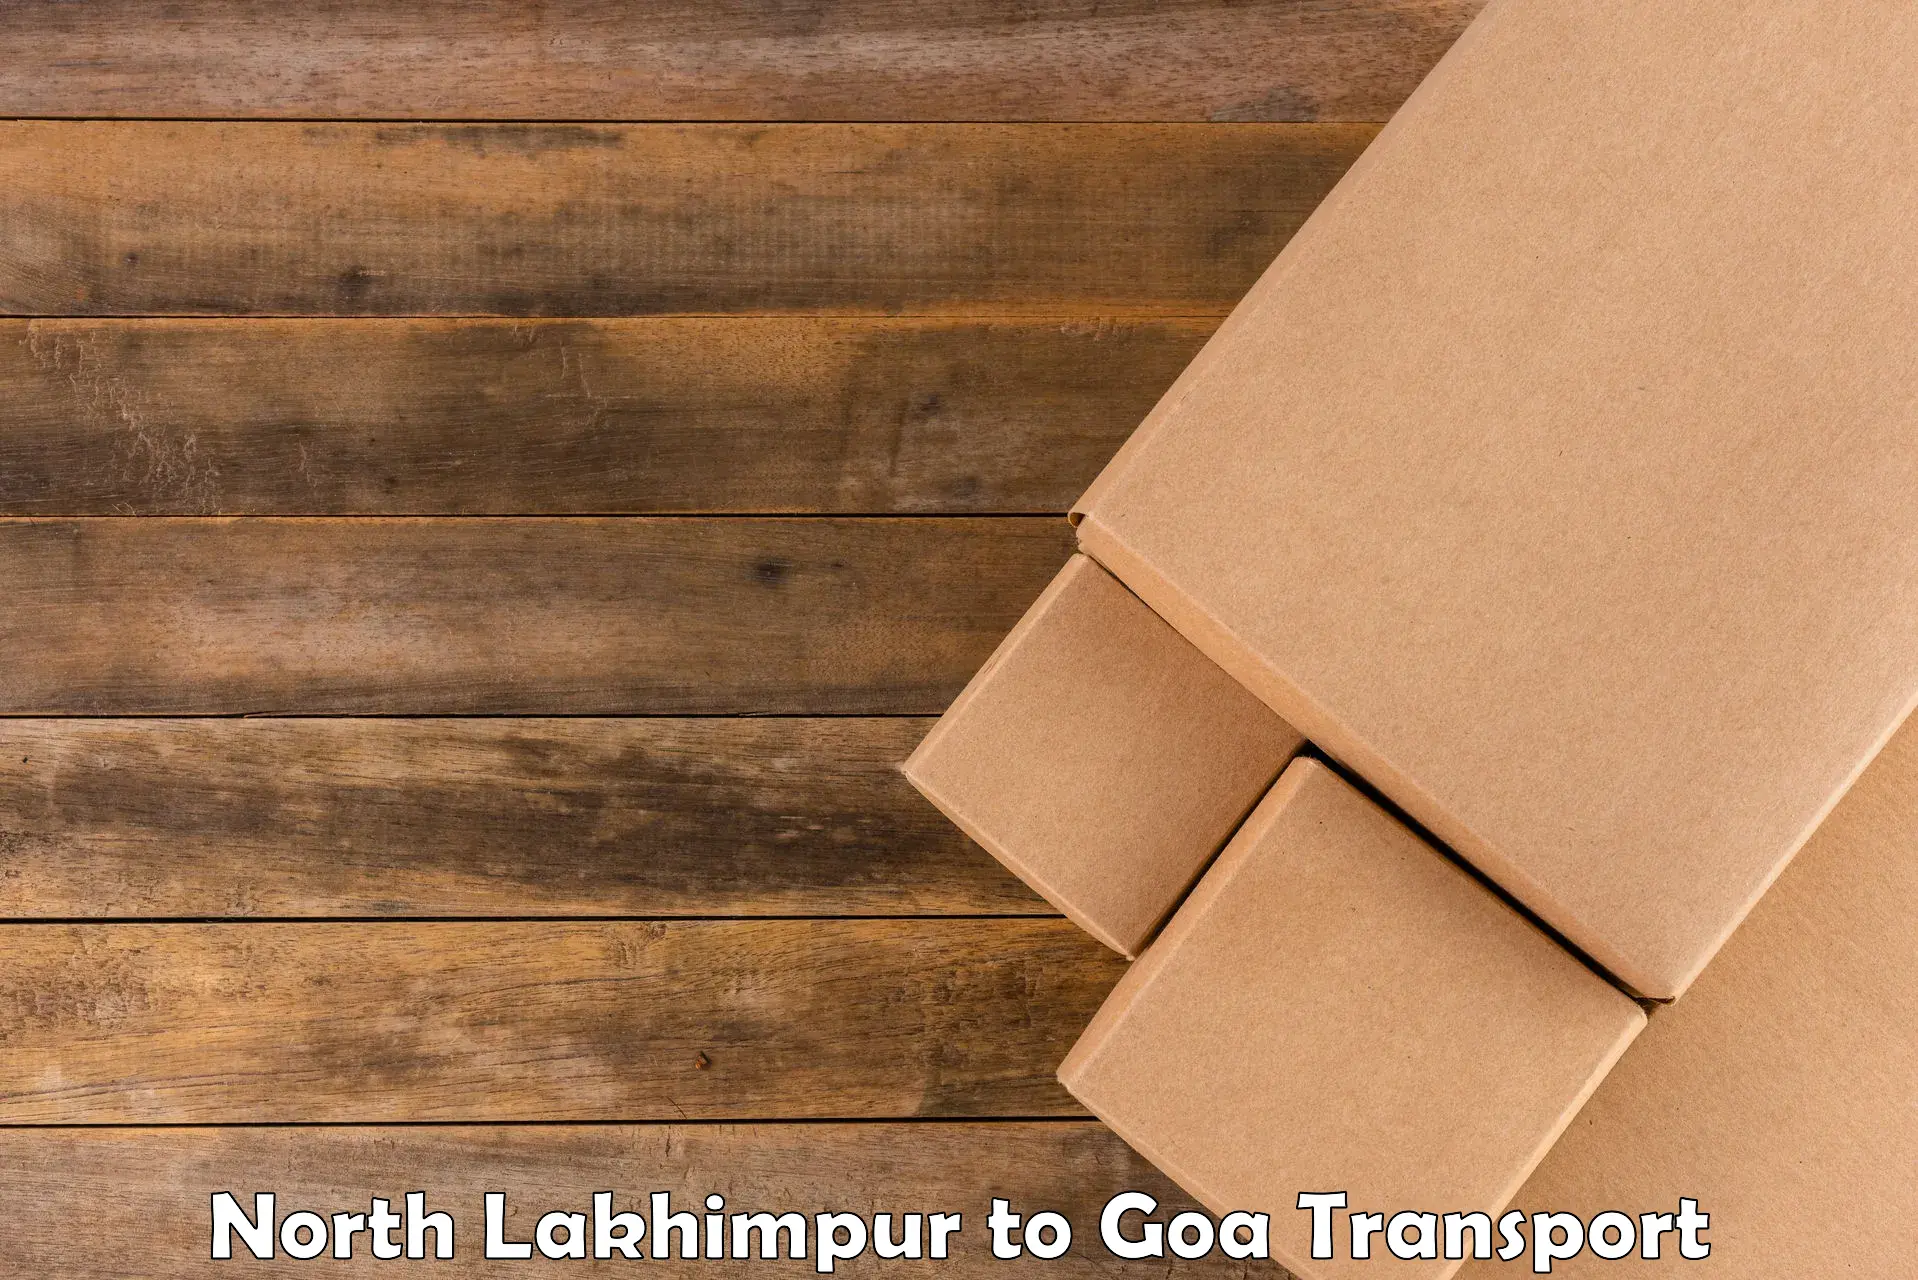 Land transport services North Lakhimpur to Bicholim